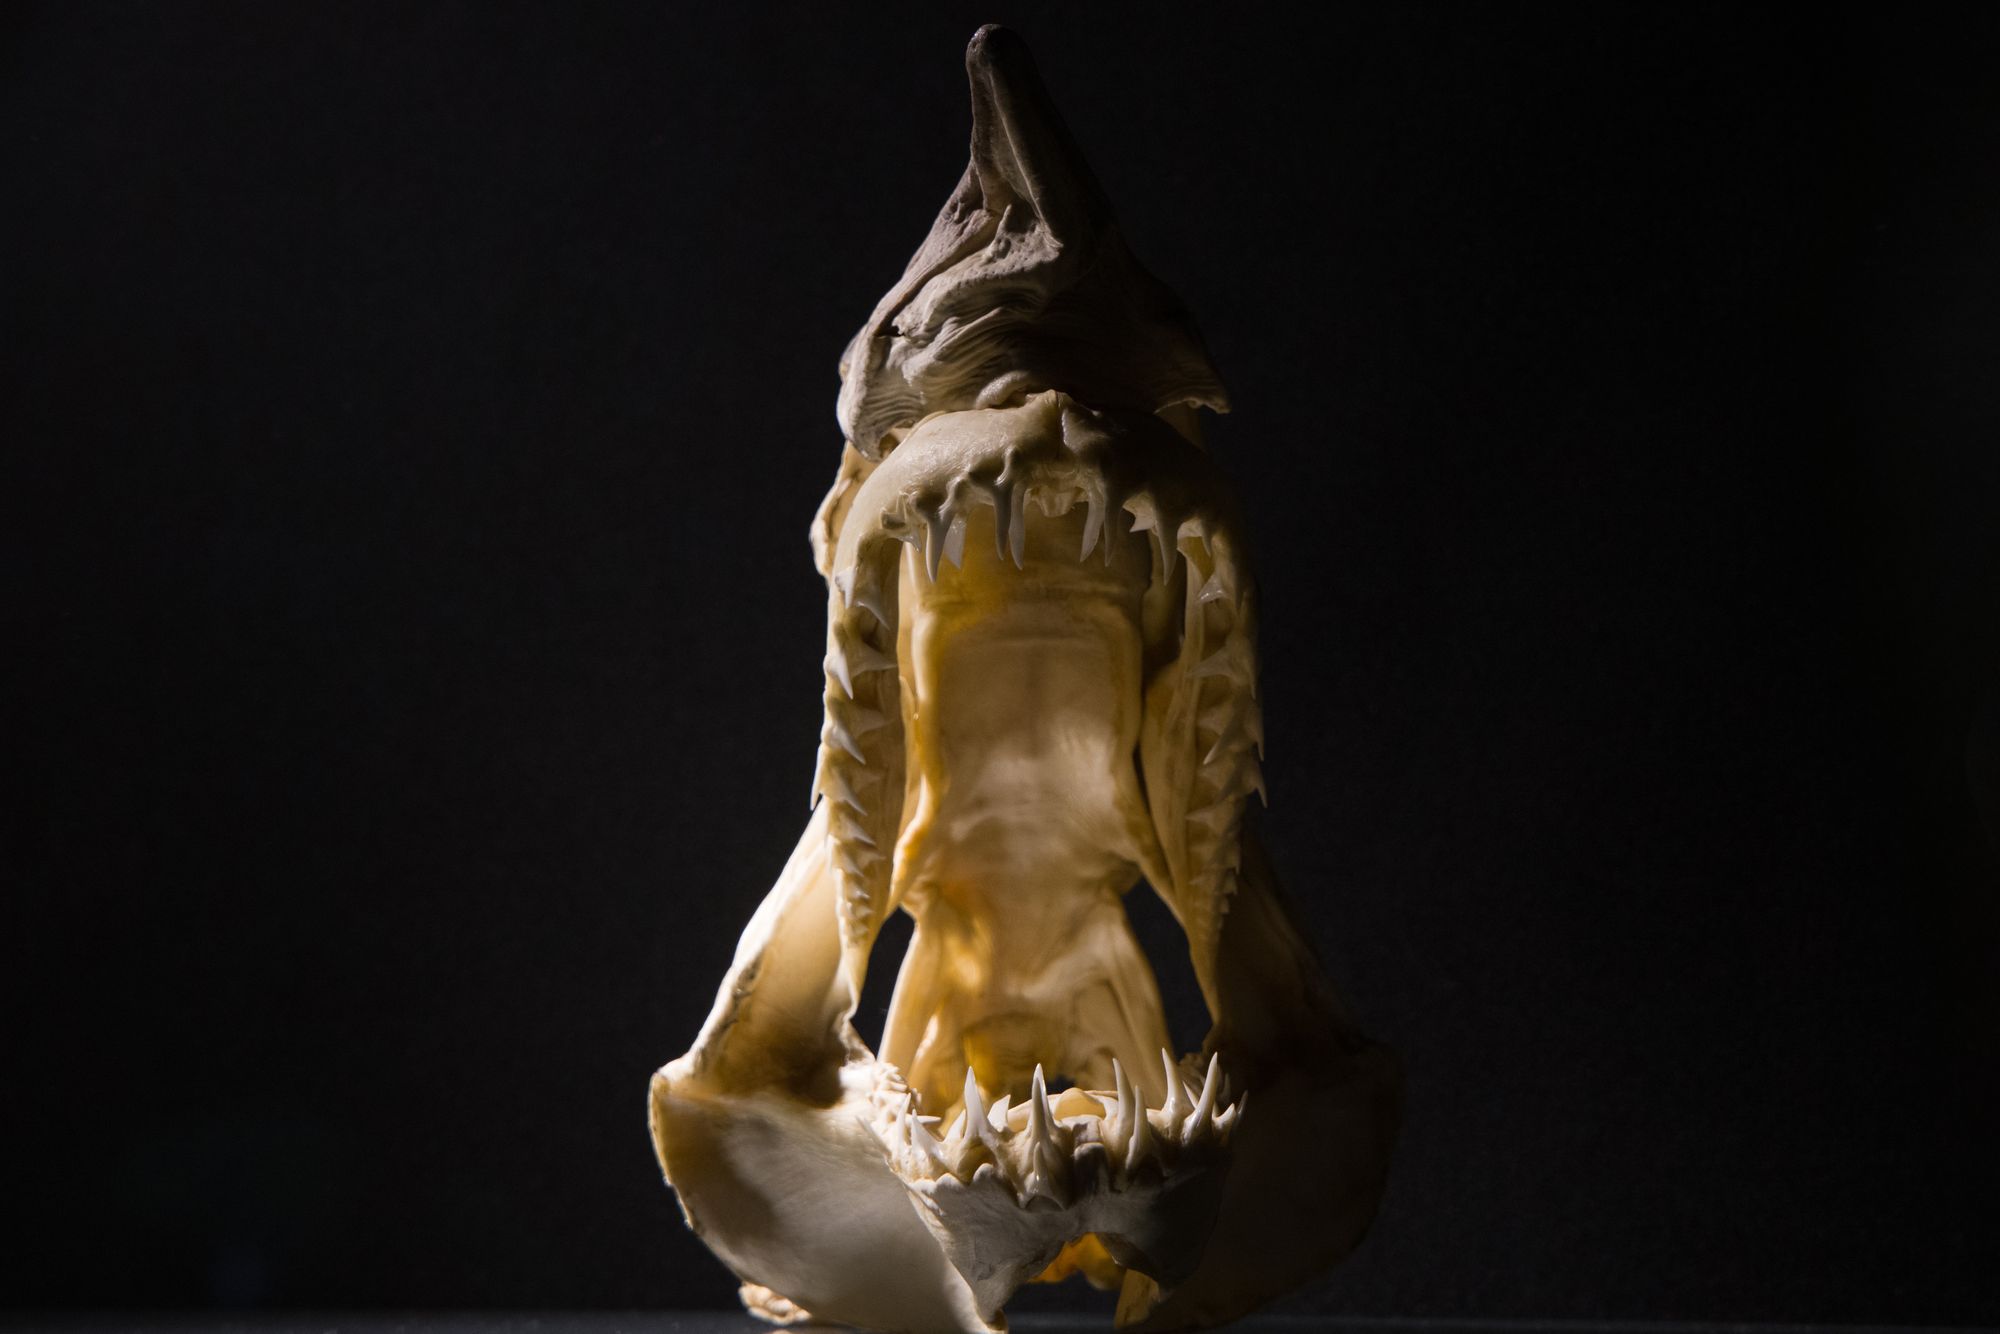 Morfologie žraločích zubů objasňuje evoluci žraloků napříč vymíráním na konci křídy